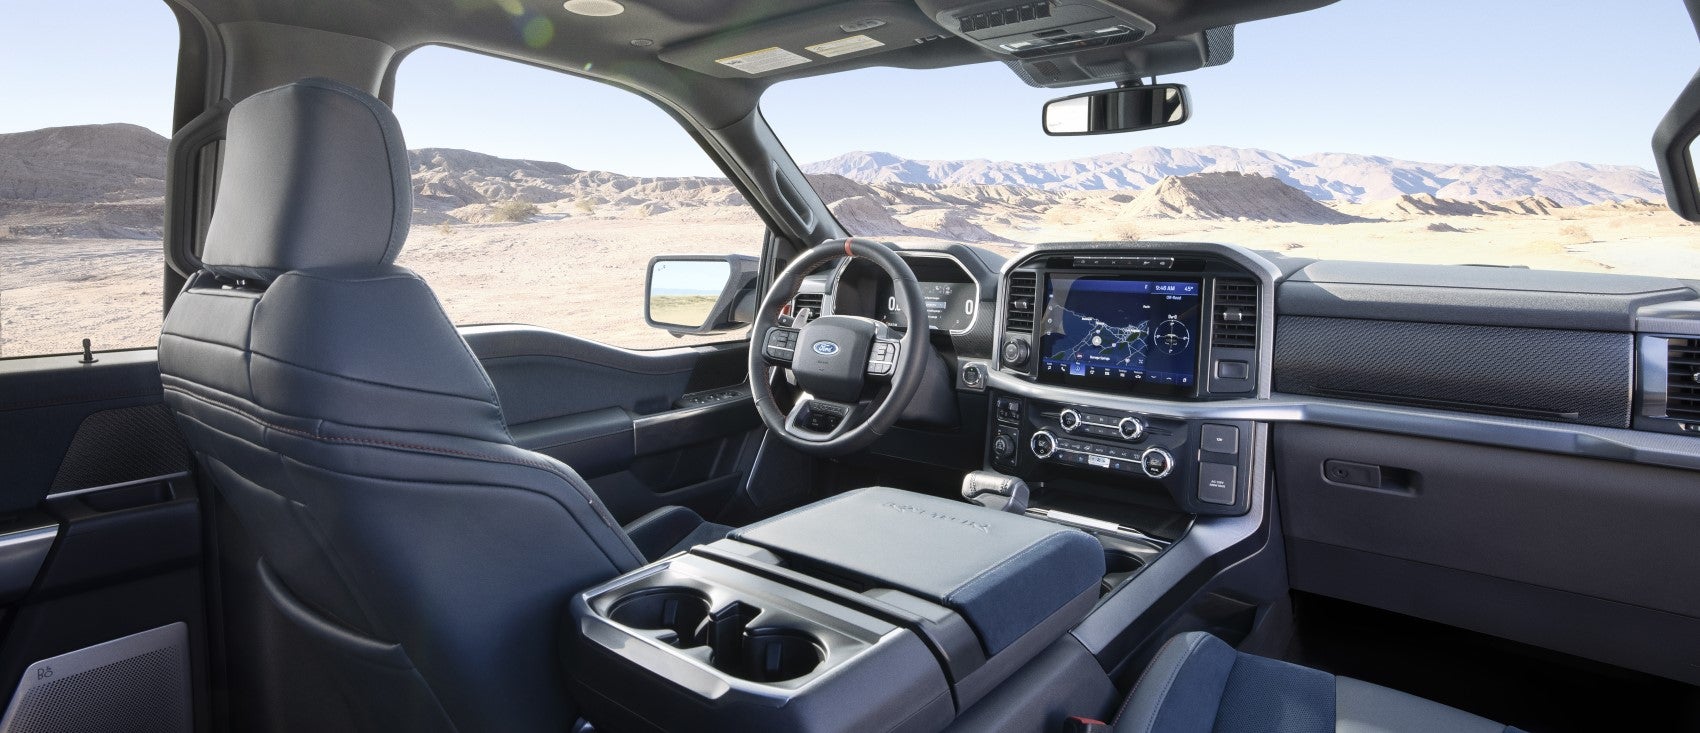 Ford F-150 Interior